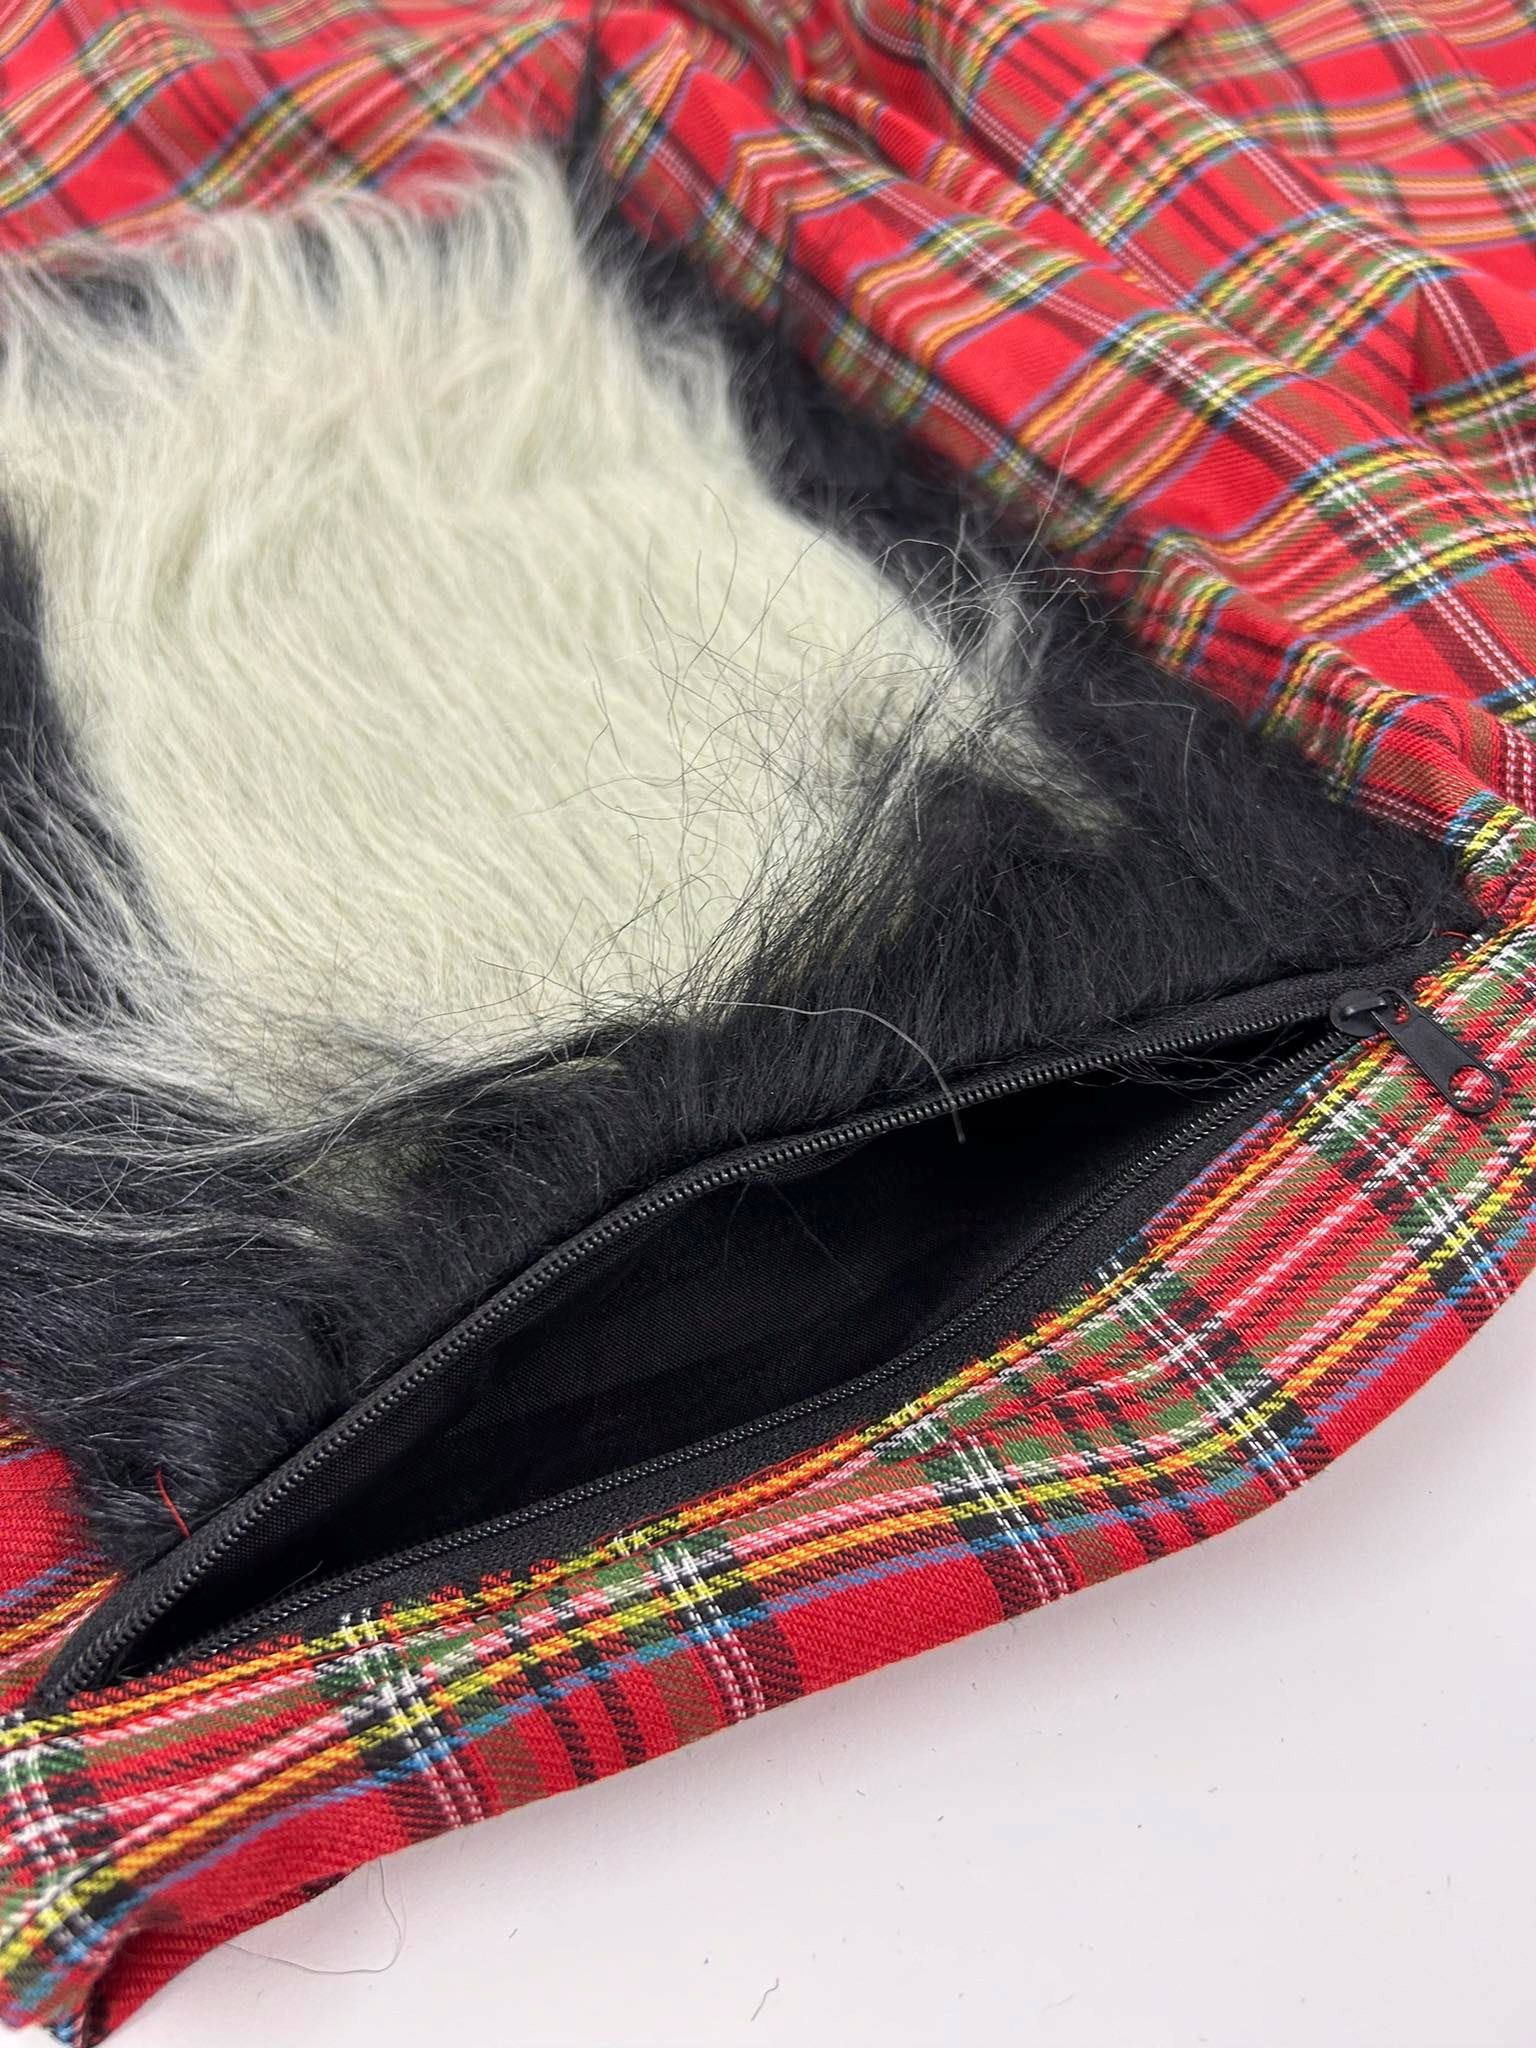 Męskie przebranie tradycyjna szkocka spódnica w kratę dla mężczyzn.